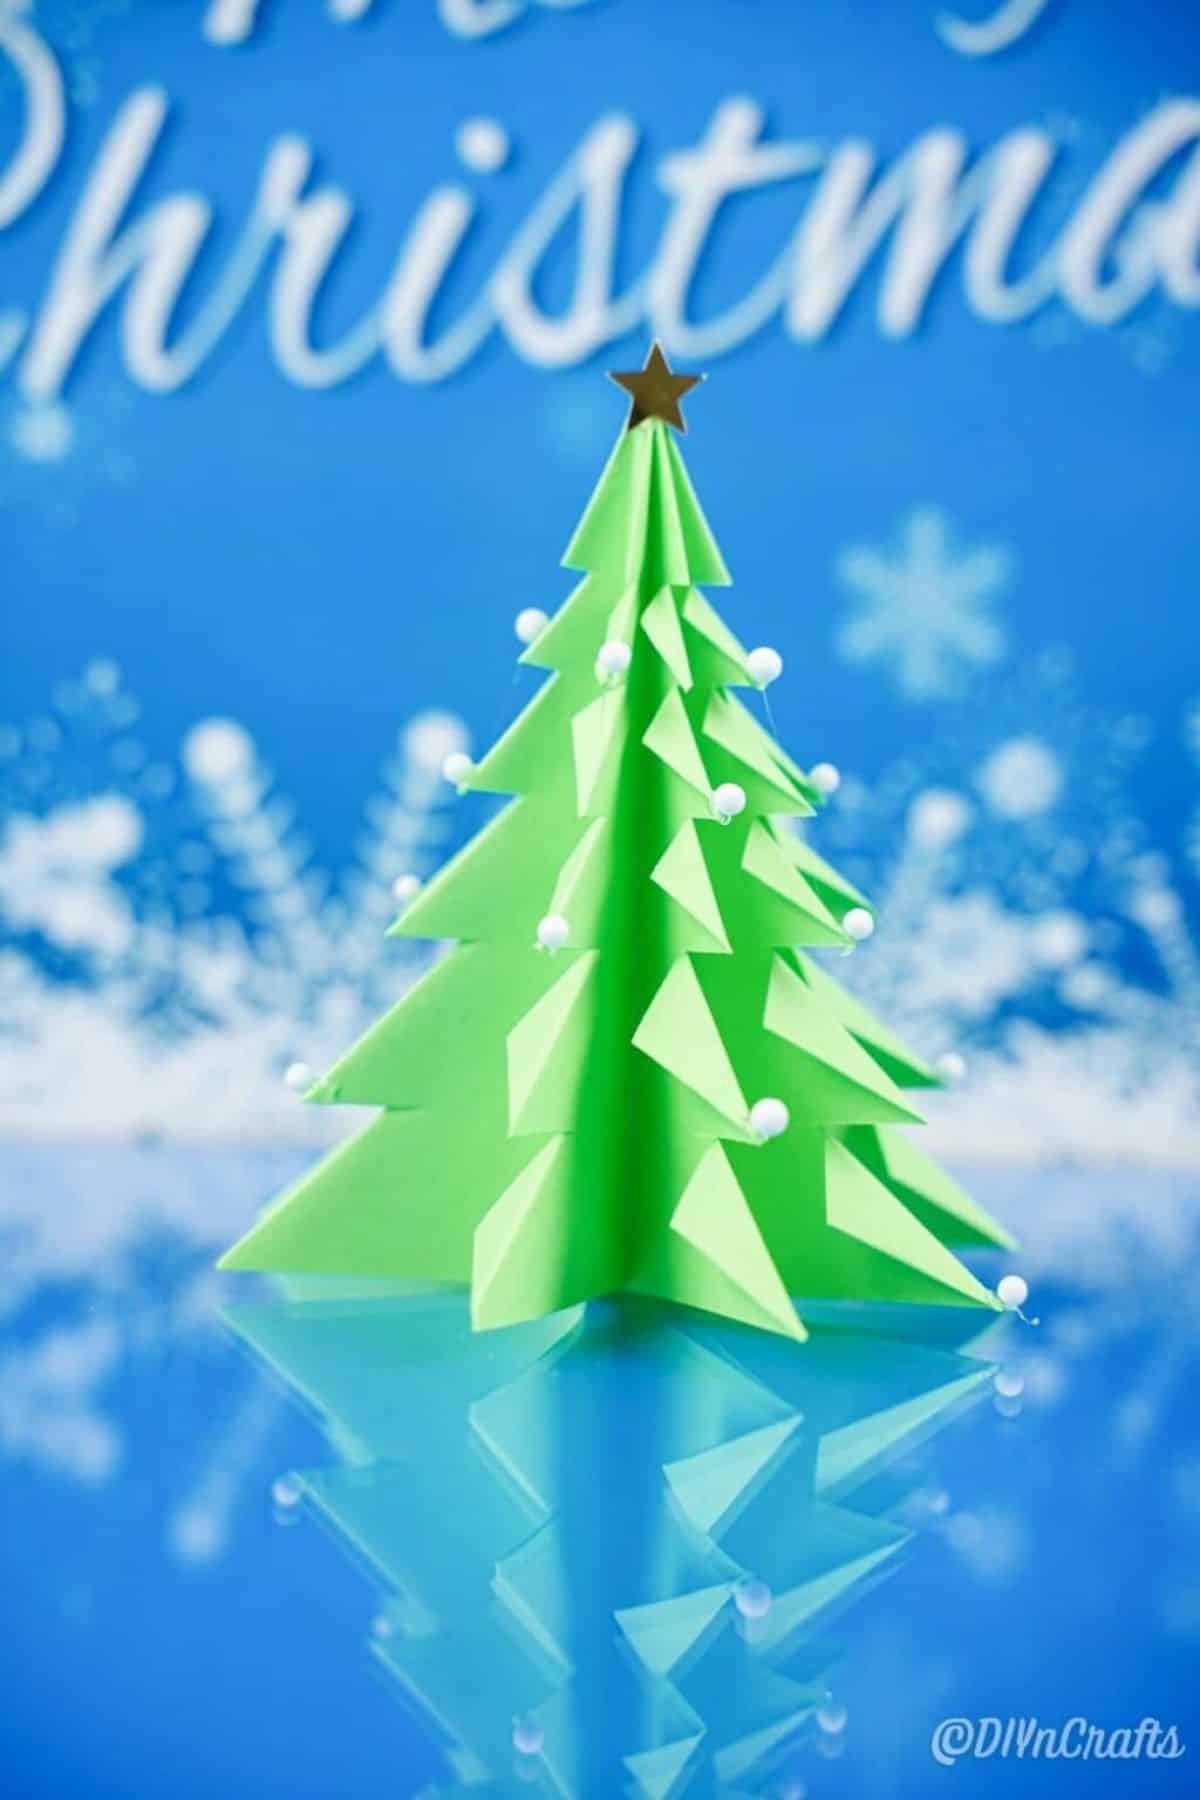 3D Paper Mini Christmas Tree Ornament